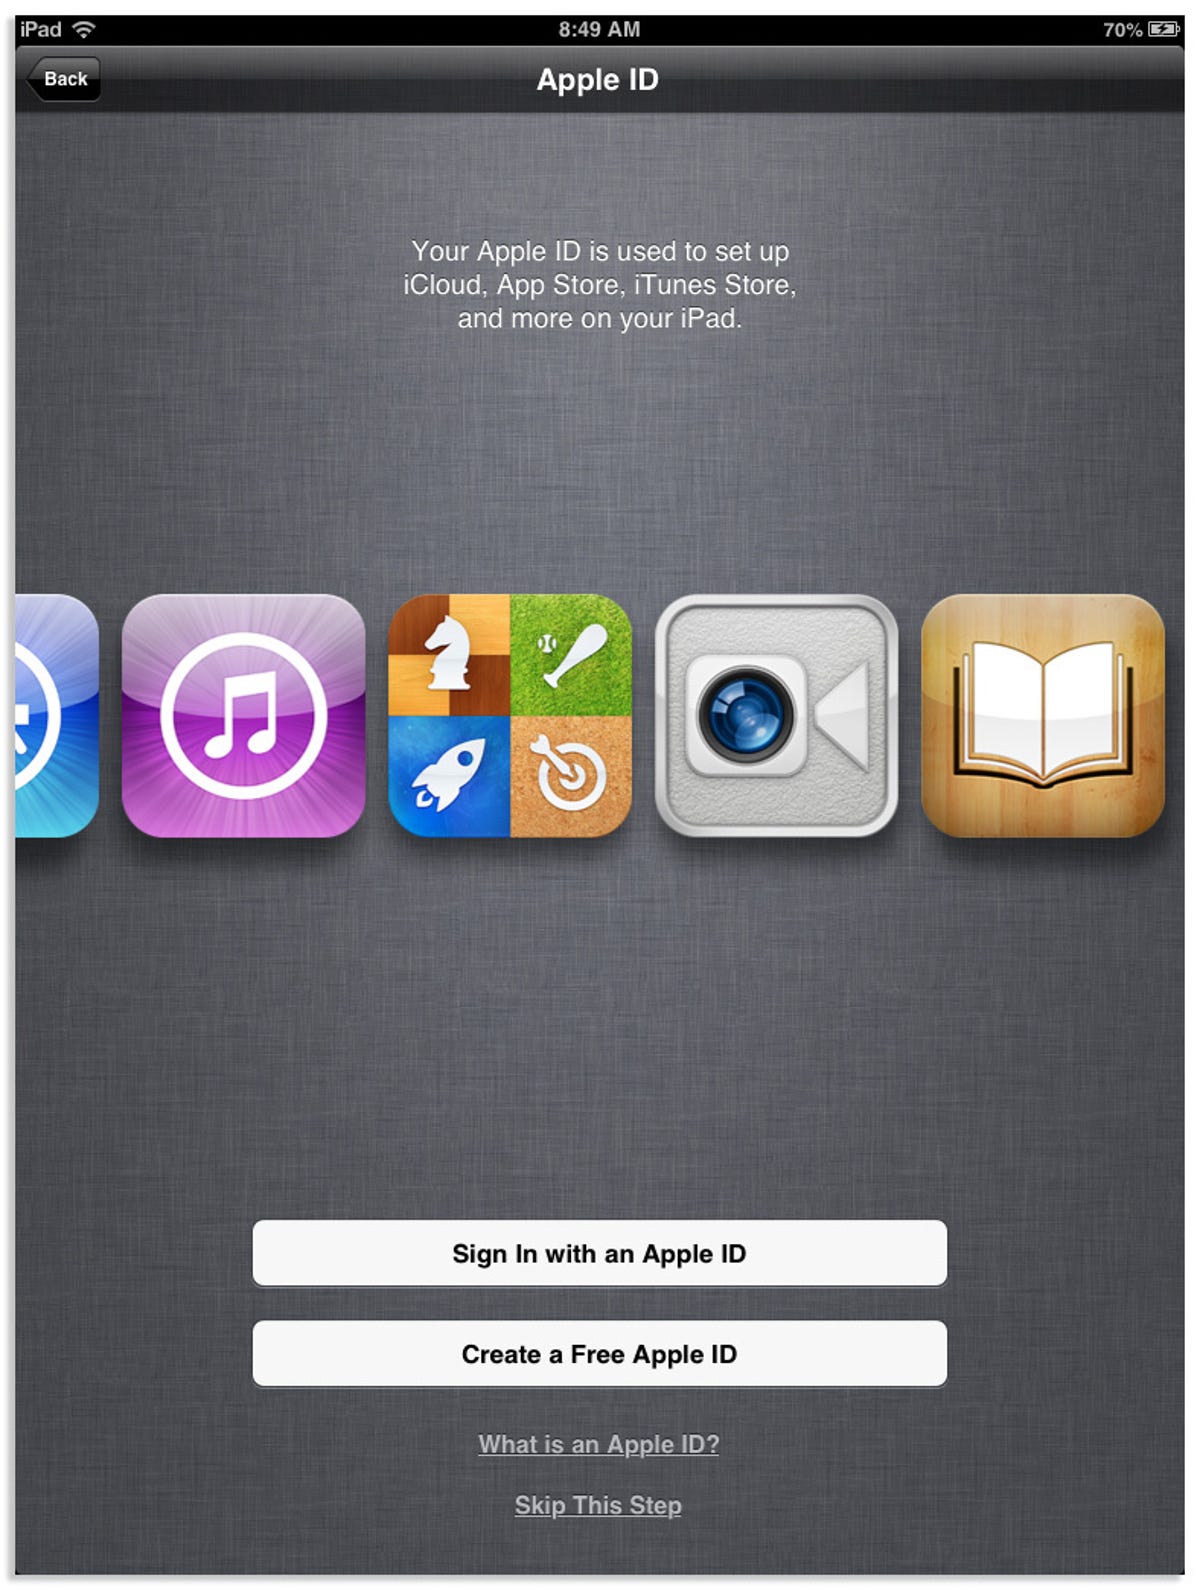 iPad_Mini_Setup7.jpg